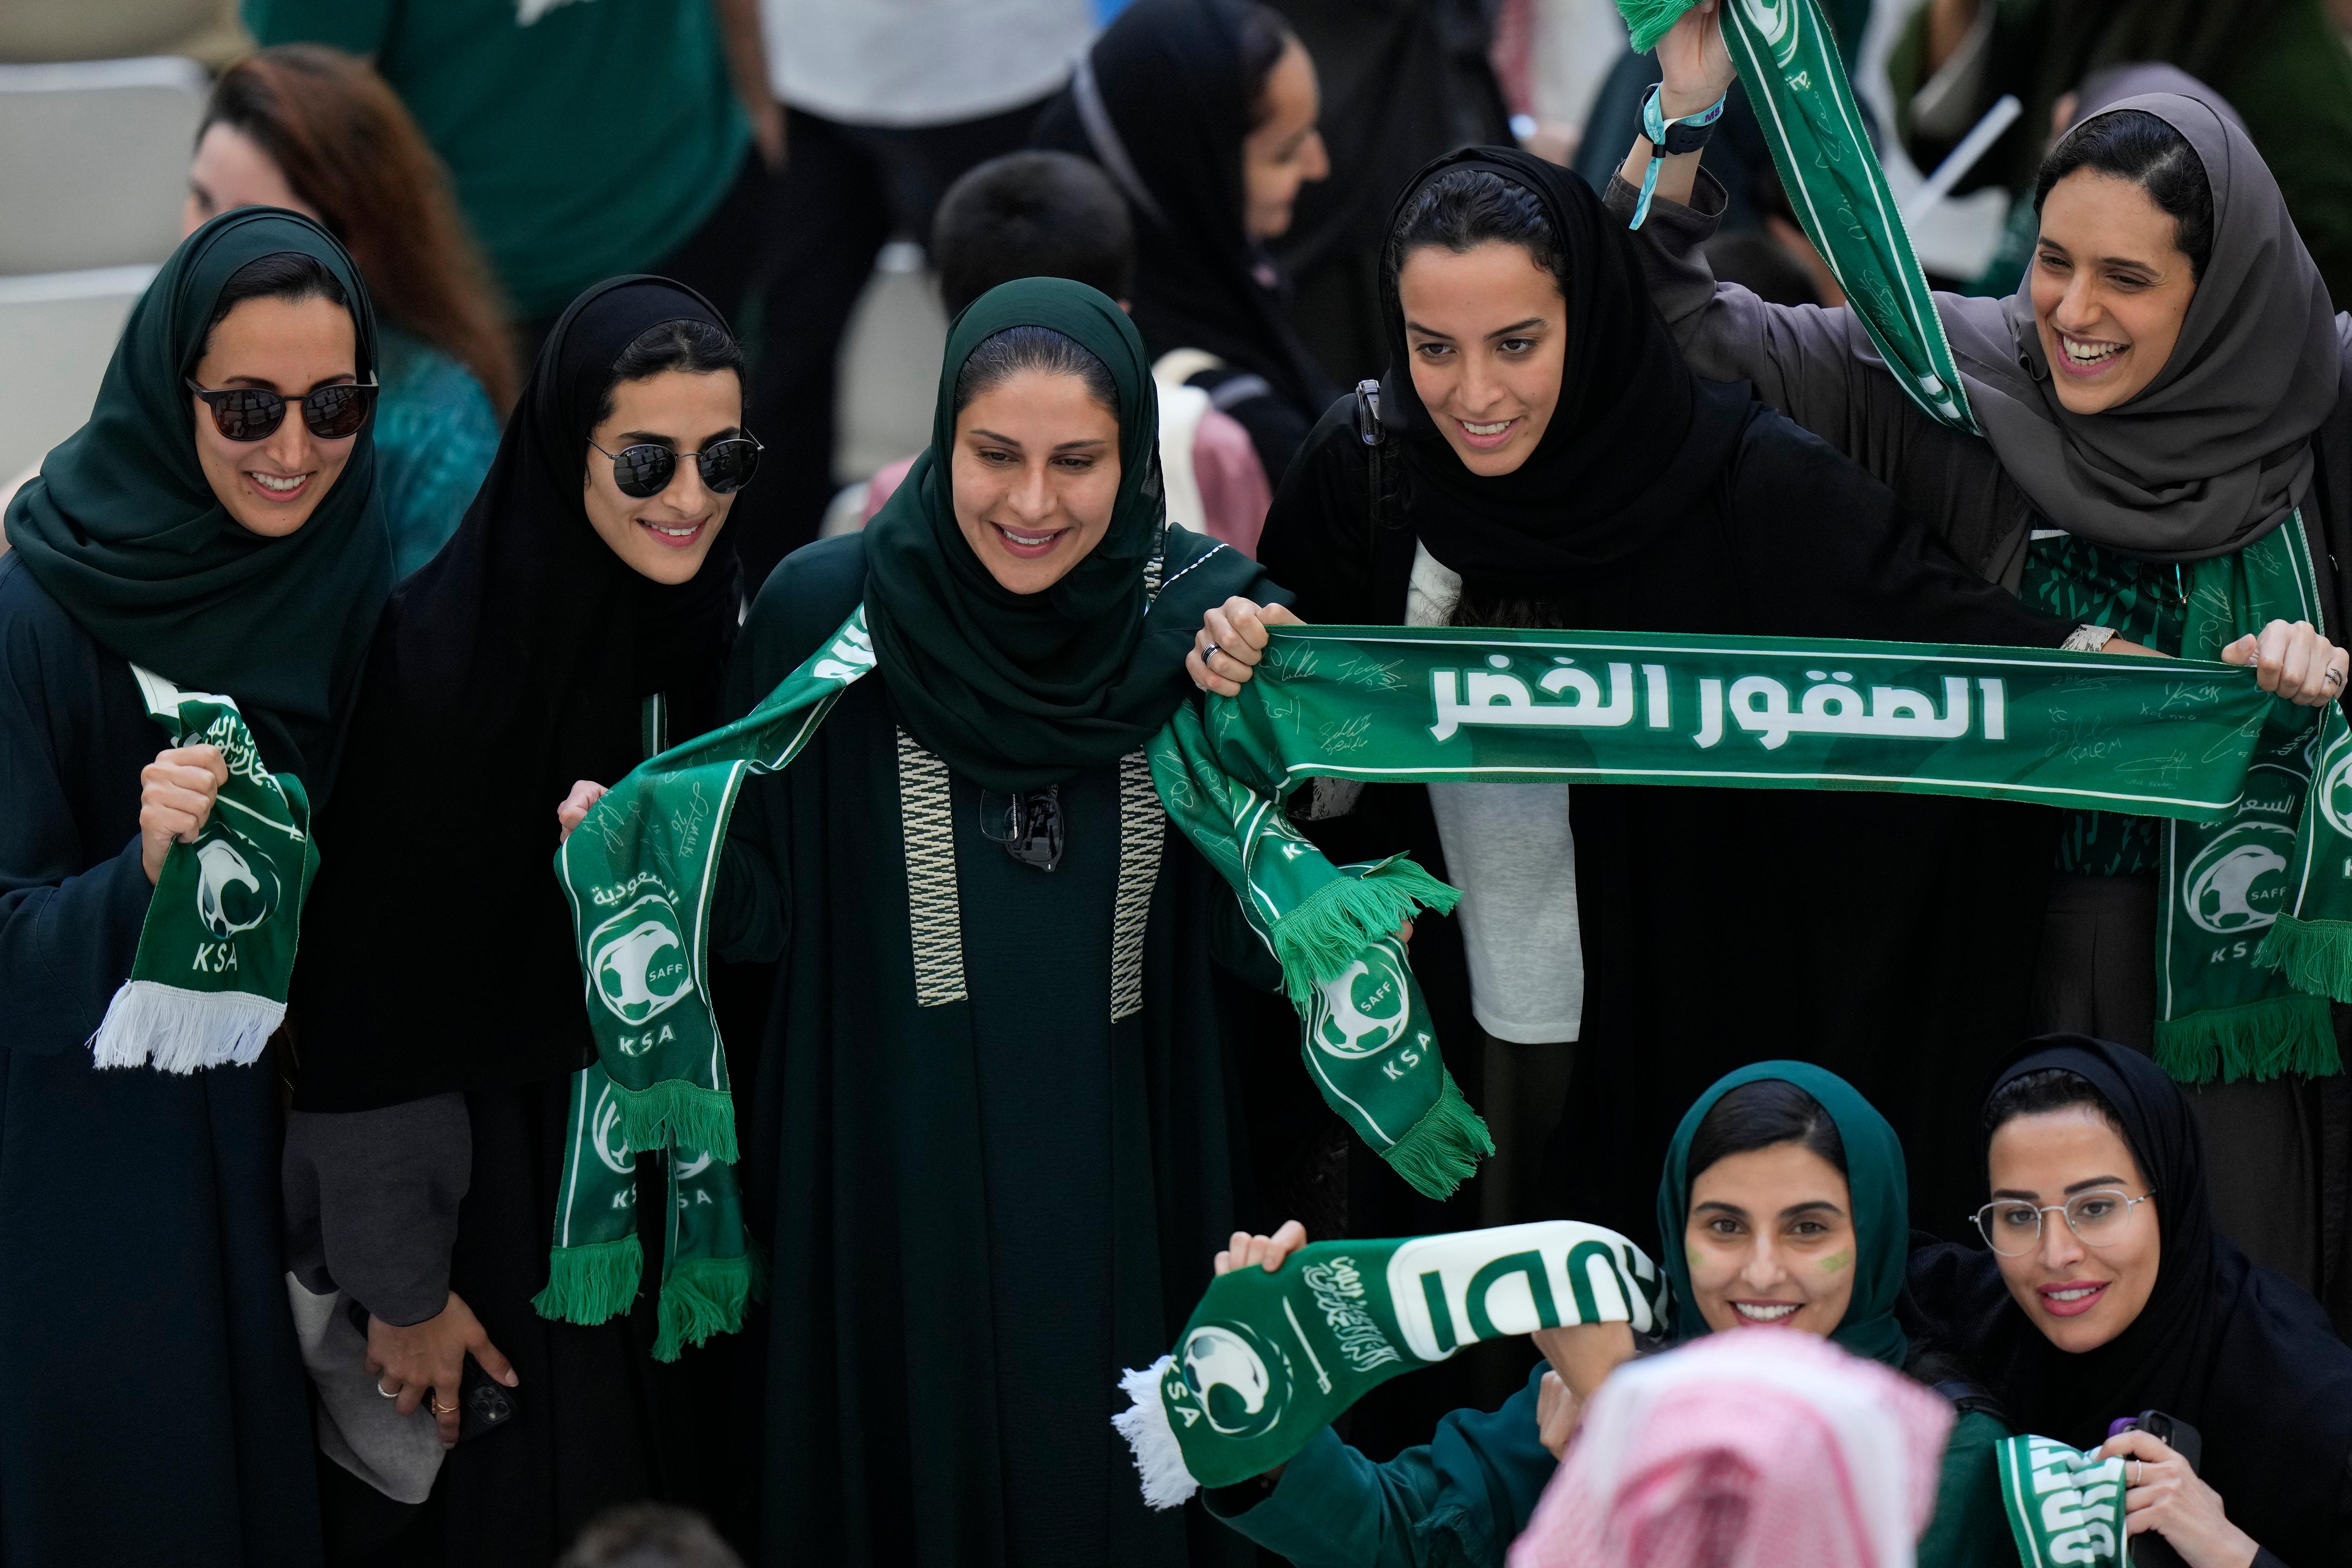 Mulheres sauditas não precisam usar abaya, diz príncipe